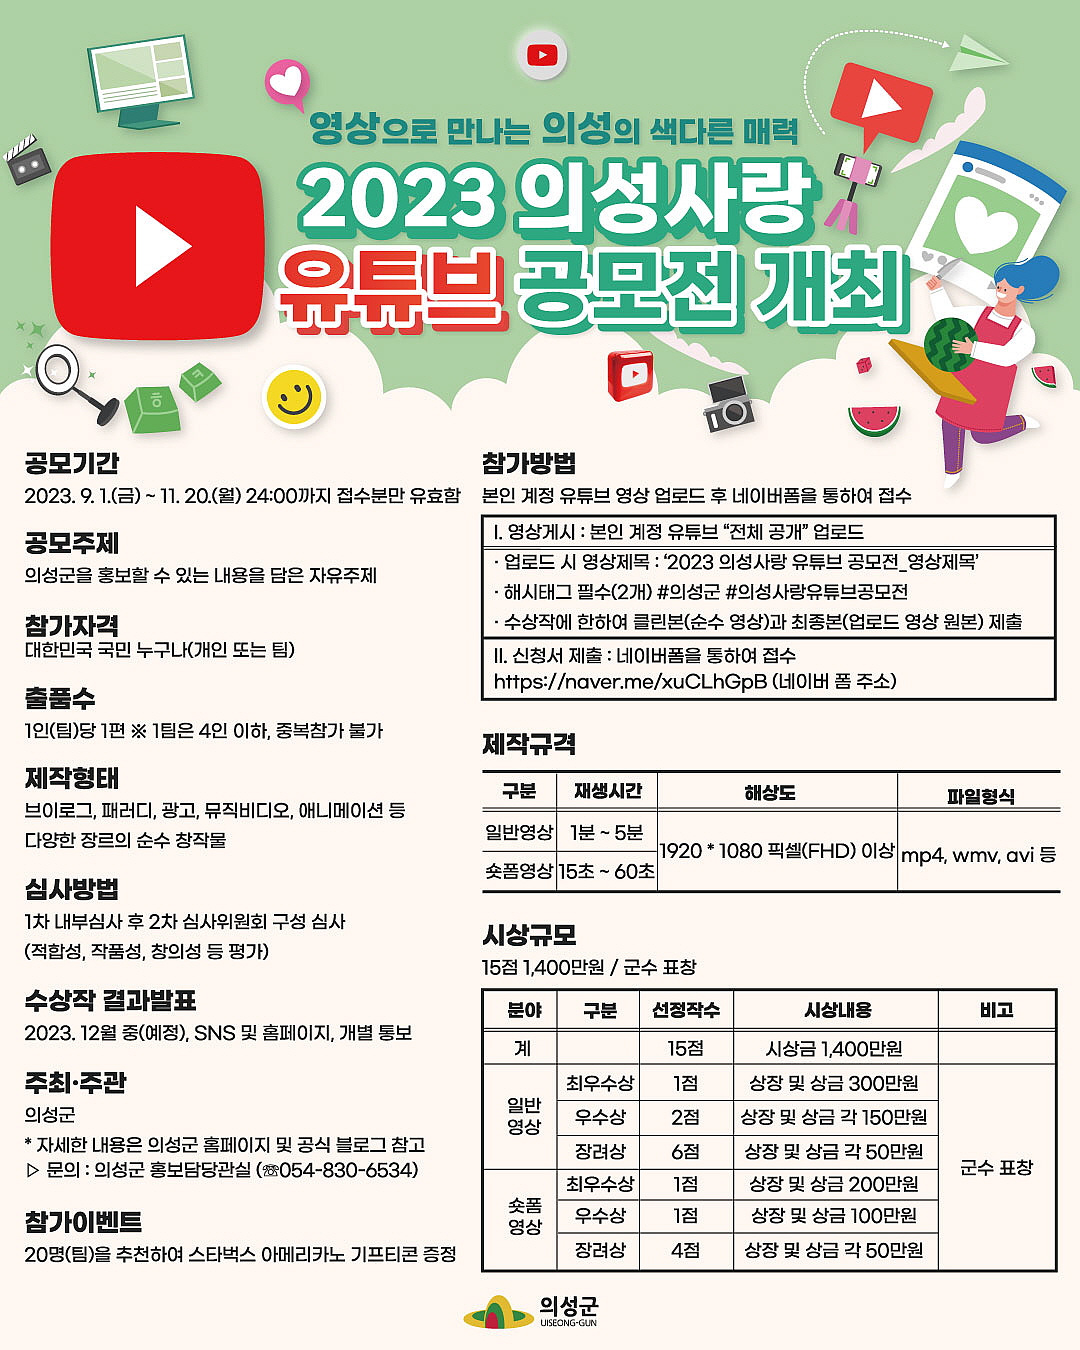 의성군, 2023 의성사랑 유튜브 공모전 개최